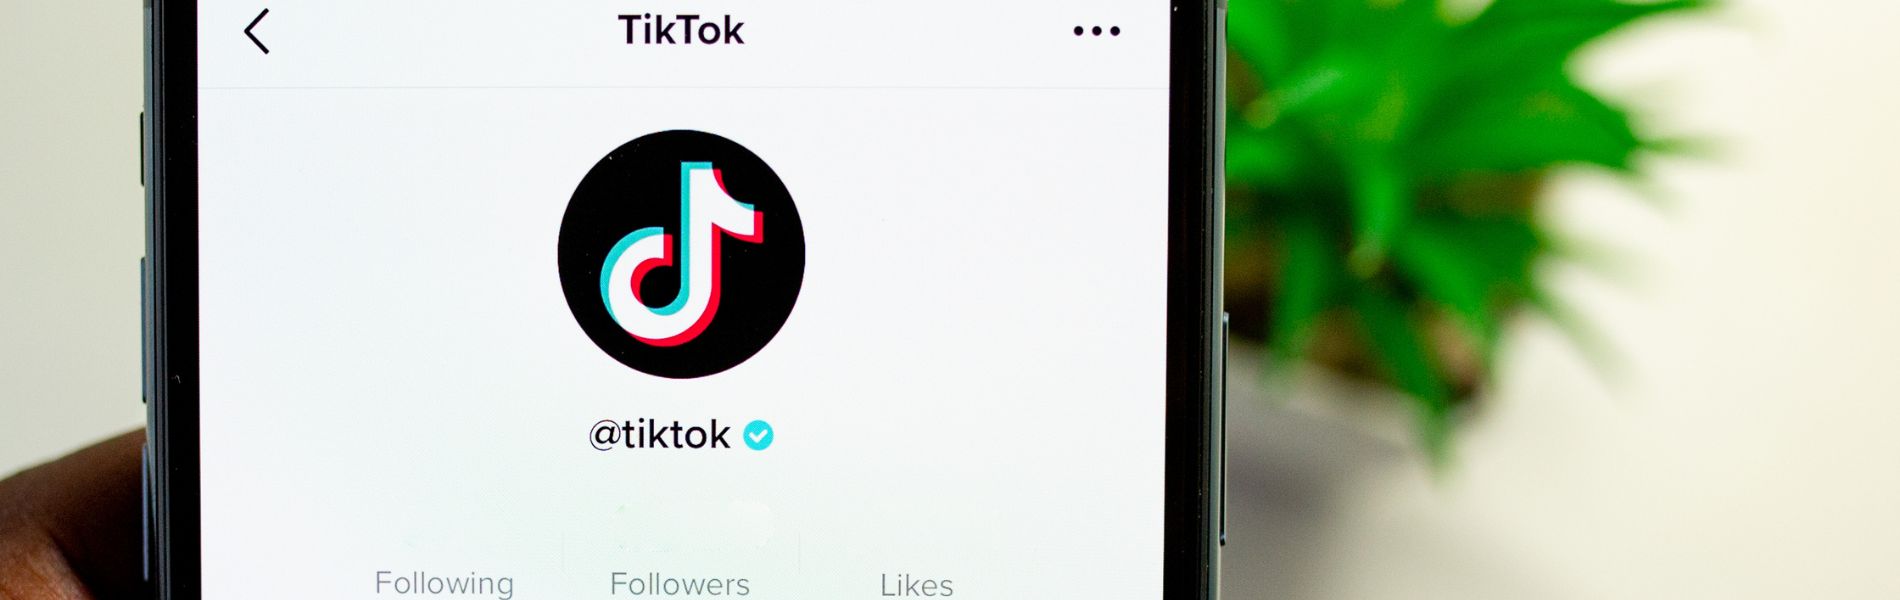 Instagram Reels o TikTok? Ecco le differenze che i brand devono conoscere